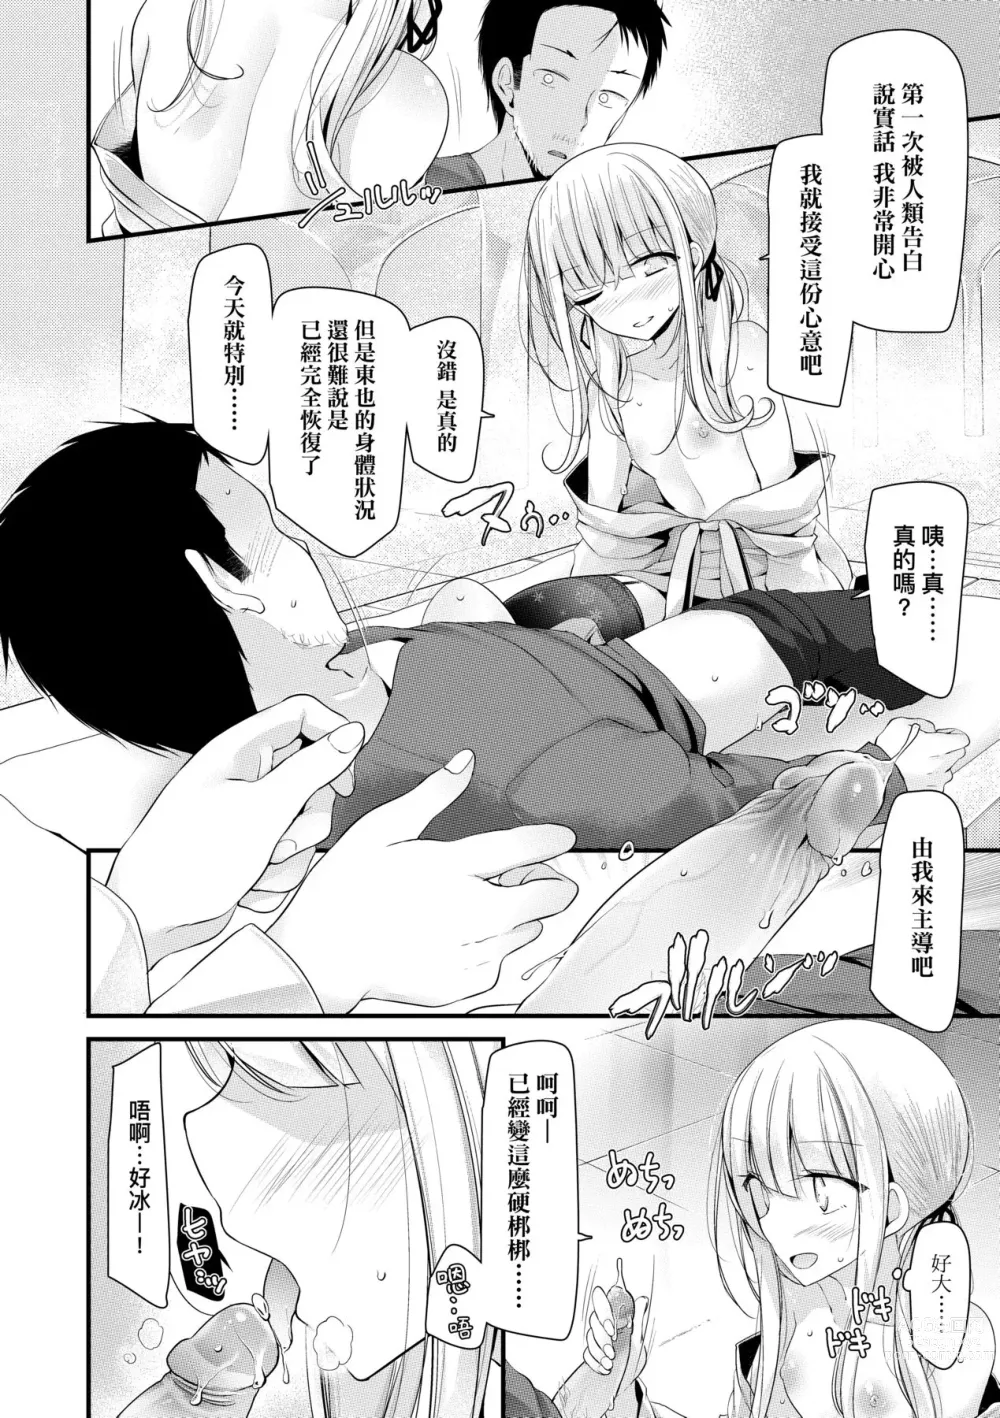 Page 15 of manga 年上的少女你也很喜歡吧? (decensored)